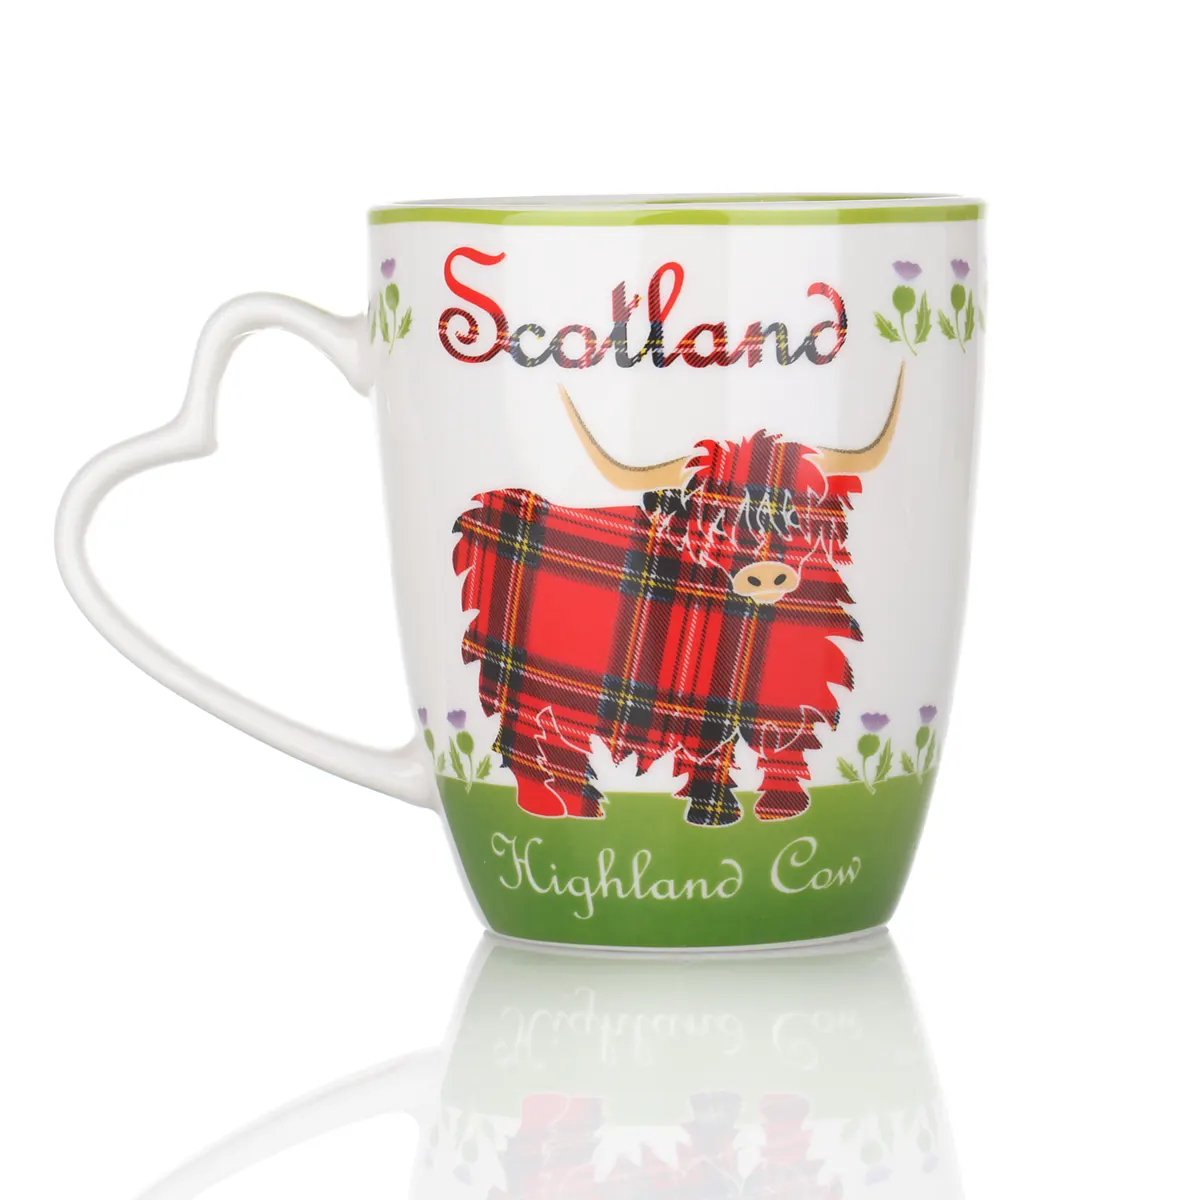 Highland Cow Mug - Kaffeebecher aus Keramik mit schottischem Rind & Tartan-Muster